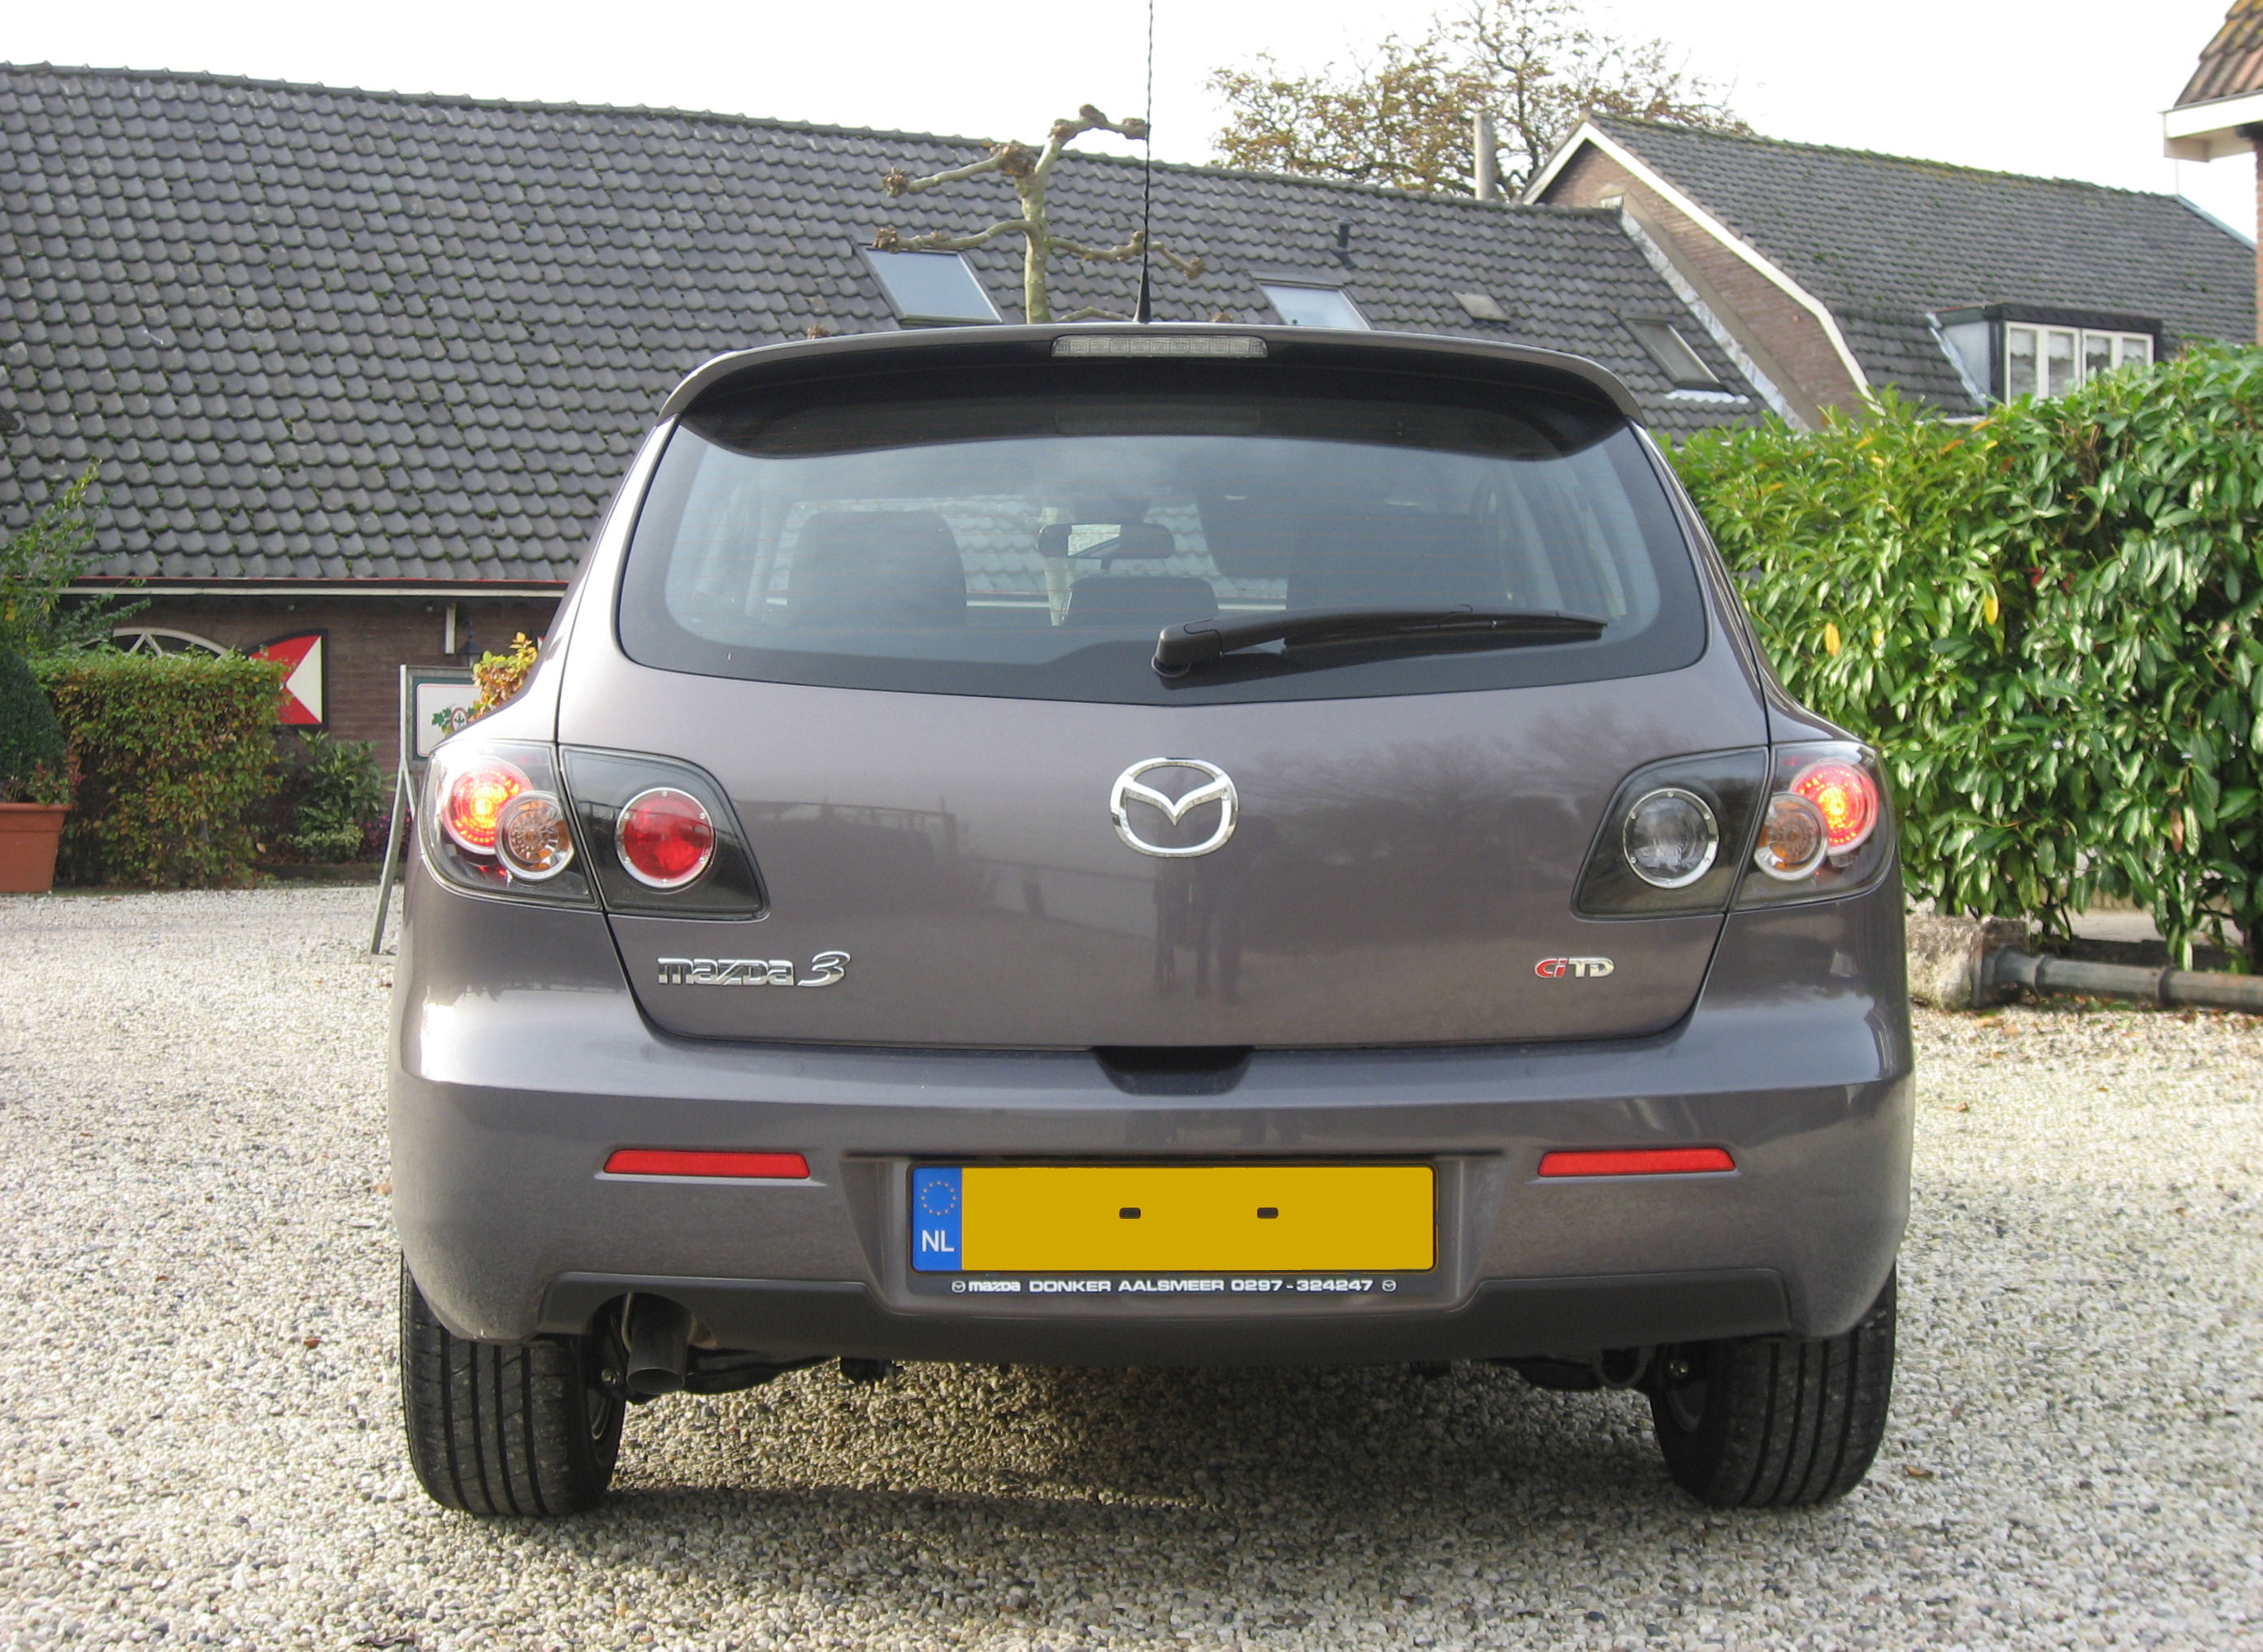 File:2007 mazda 3 hatchback rear.JPG